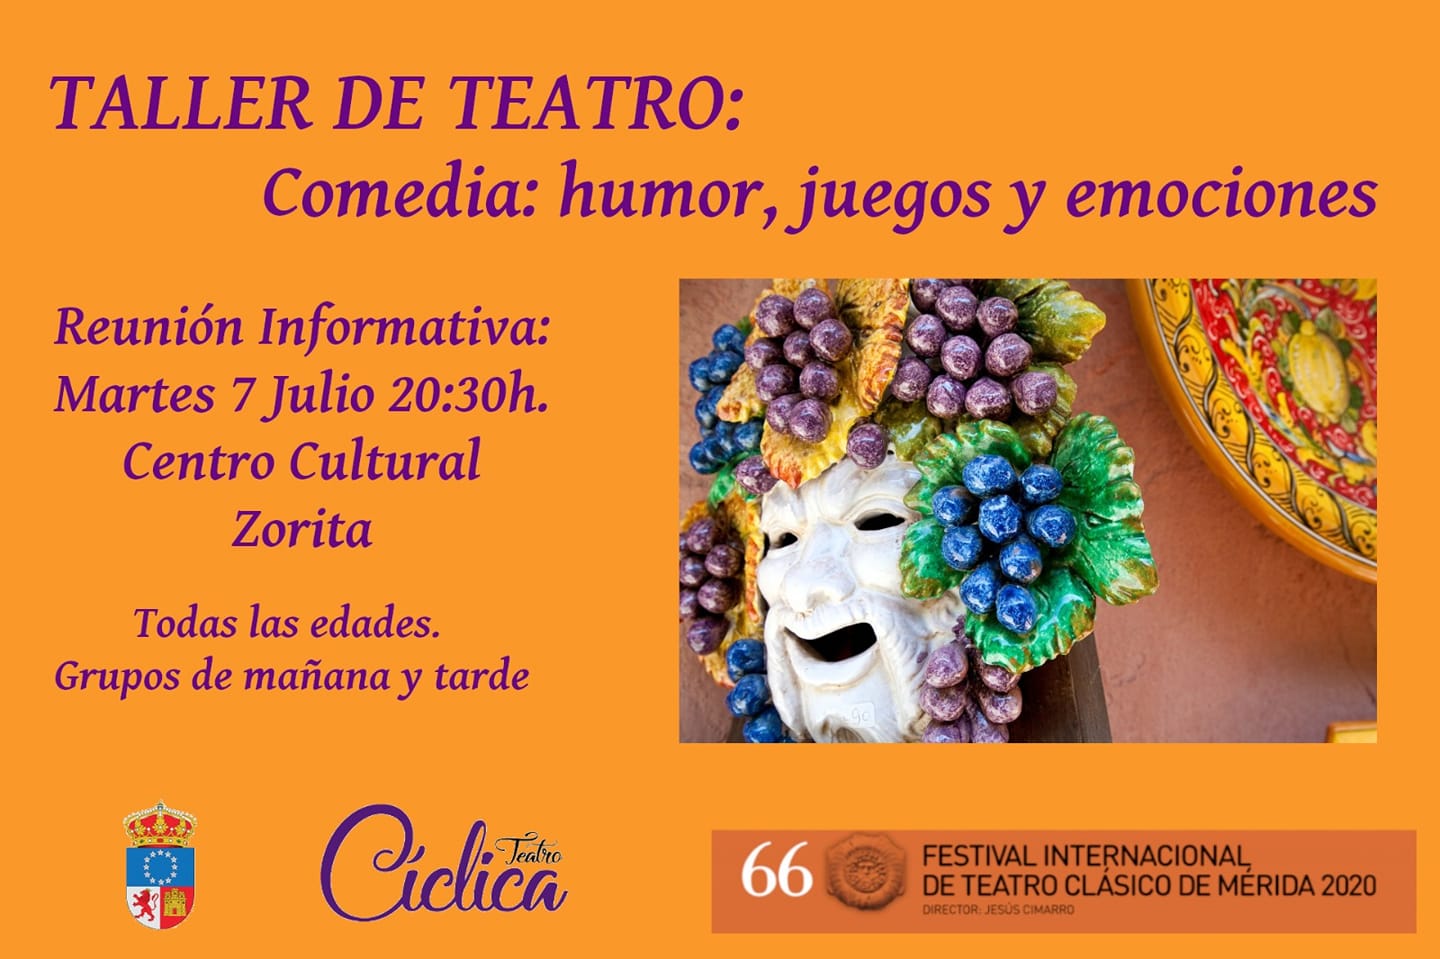 Taller de teatro 2020 - Zorita (Cáceres)